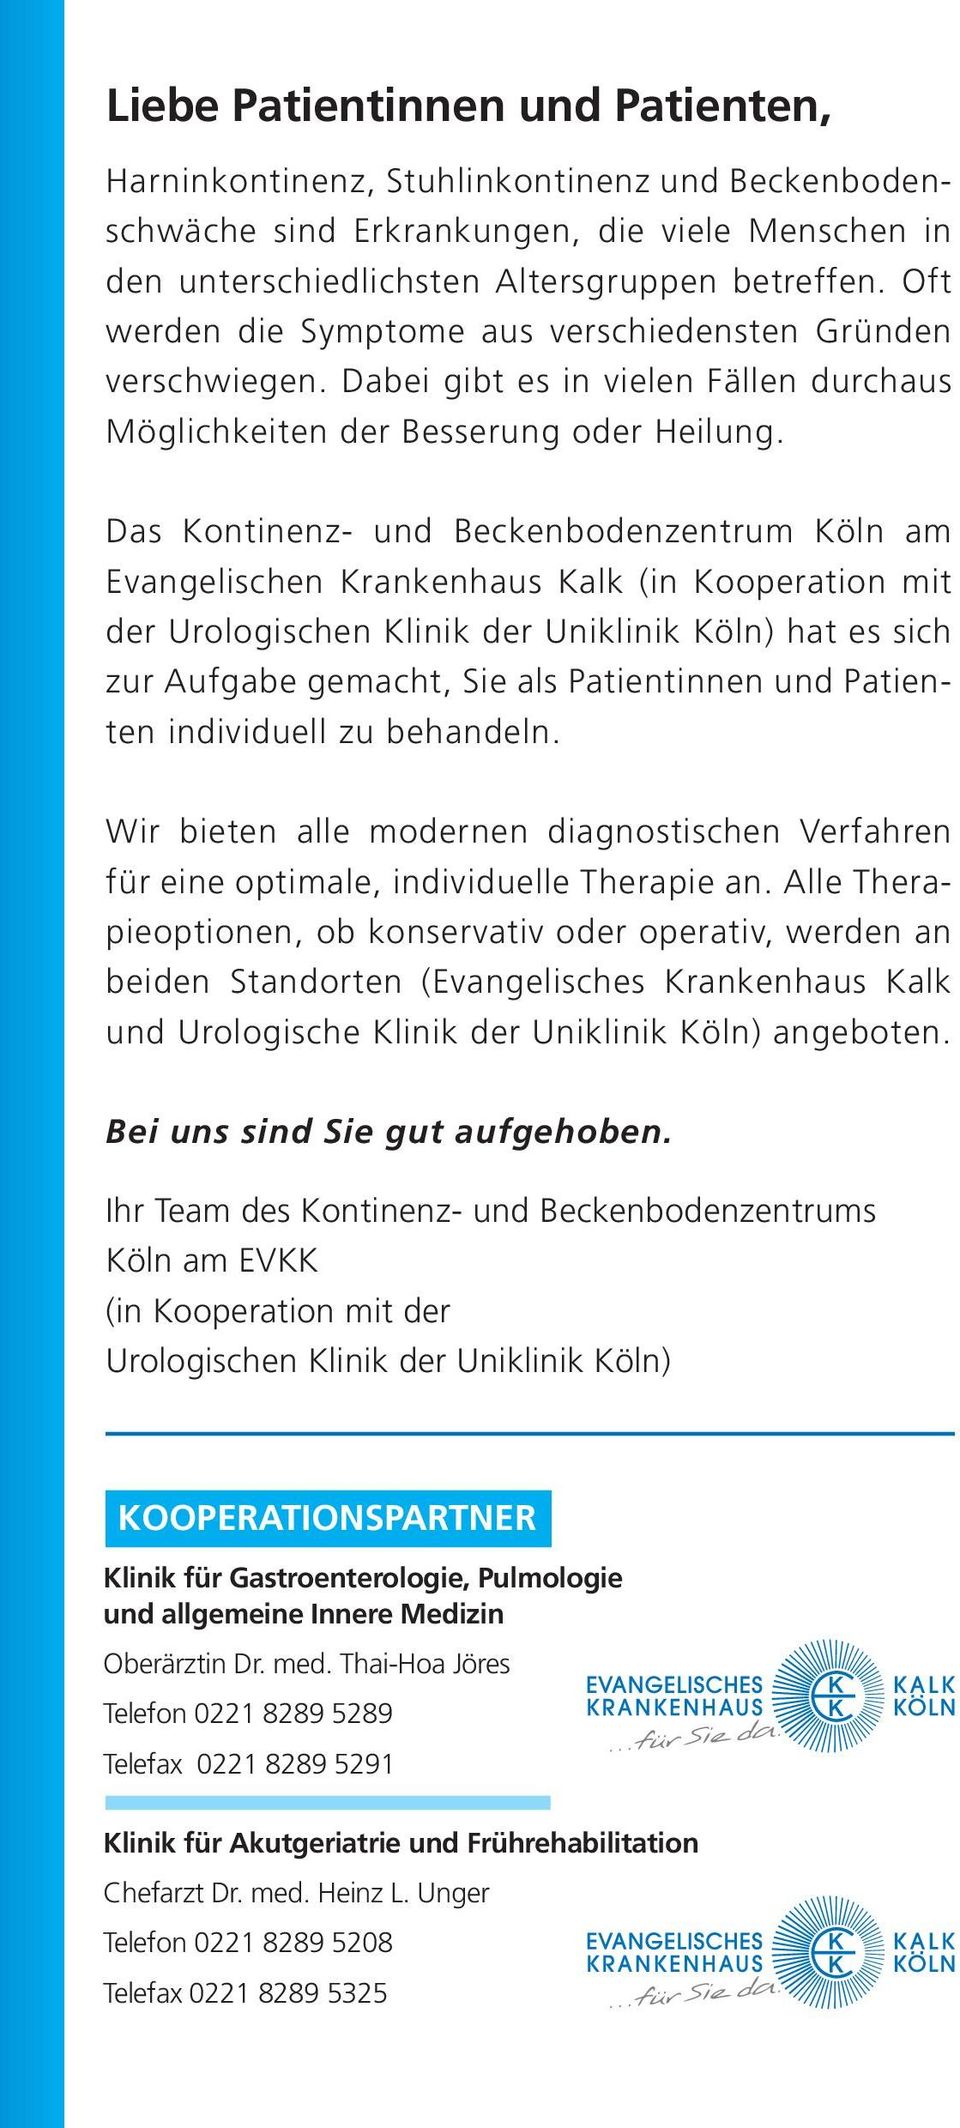 Das Kontinenz- und Beckenbodenzentrum Köln am Evangelischen Krankenhaus Kalk (in Kooperation mit der Urologischen Klinik der Uniklinik Köln) hat es sich zur Aufgabe gemacht, Sie als Patientinnen und